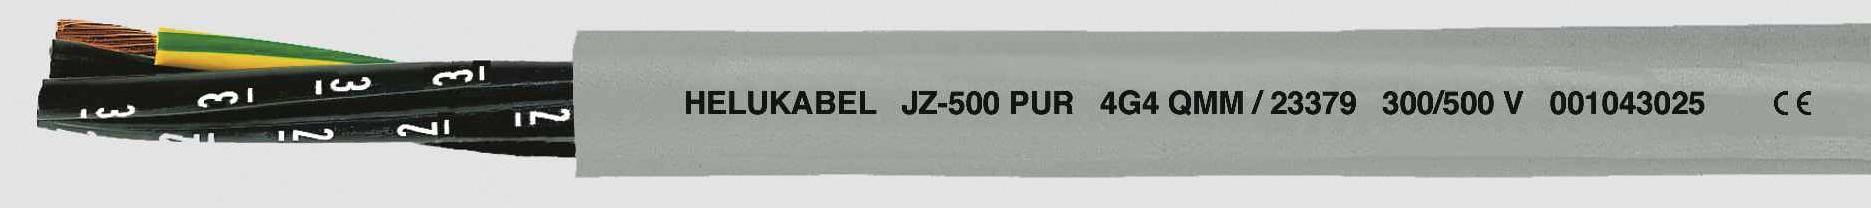 HELUKABEL JZ-500 PUR Steuerleitung 5 G 1 mm² Grau 23349 100 m